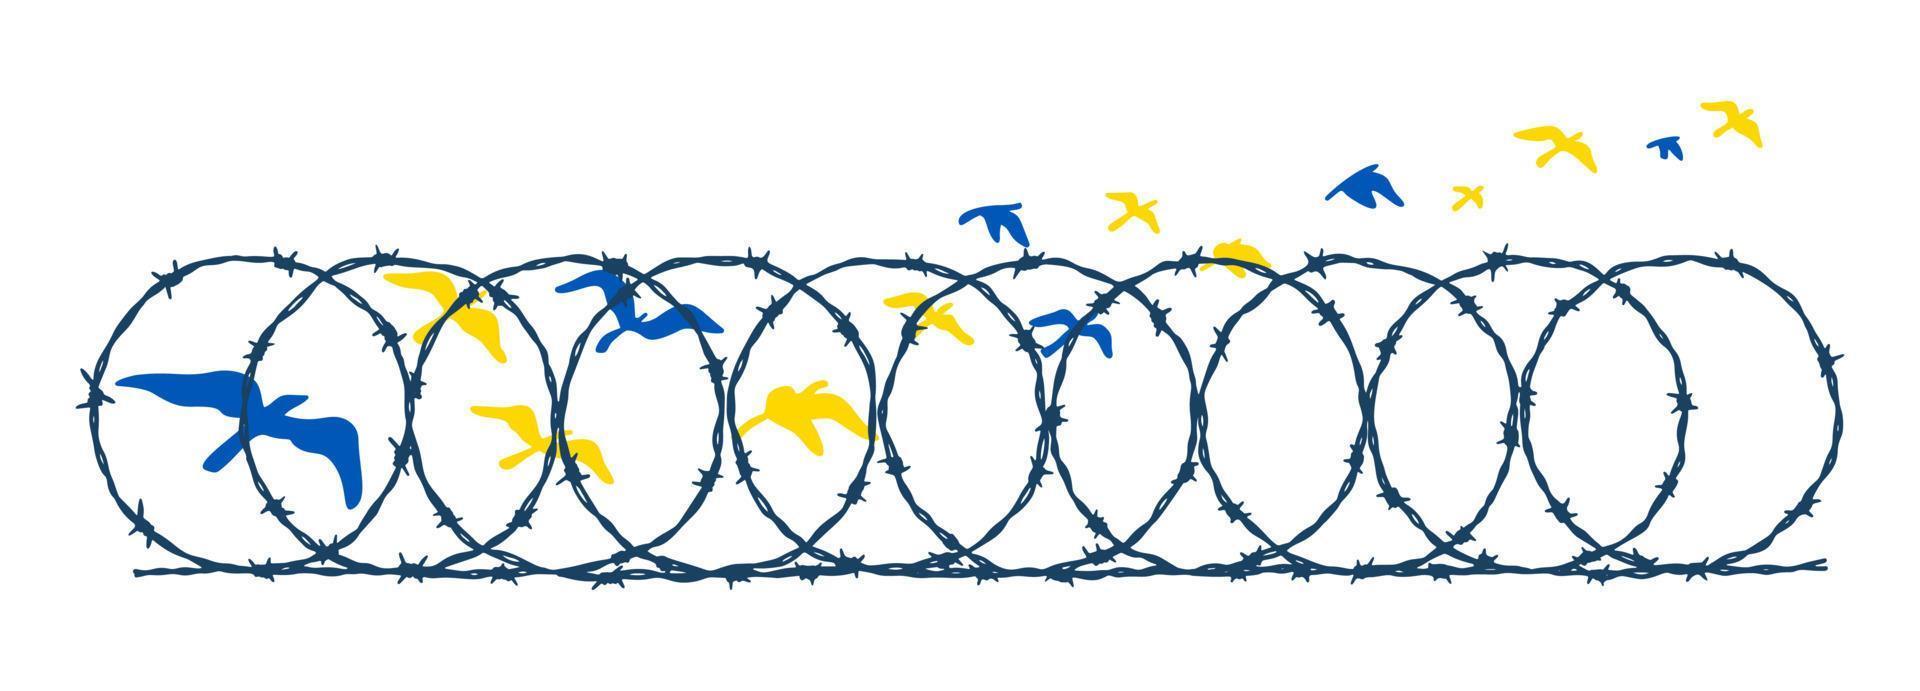 pájaros voladores en los colores de la bandera azul y amarilla ucraniana escapando de la cerca de alambre de púas. concepto de libertad. ilustración vectorial dibujada a mano. Oren por Ucrania vector